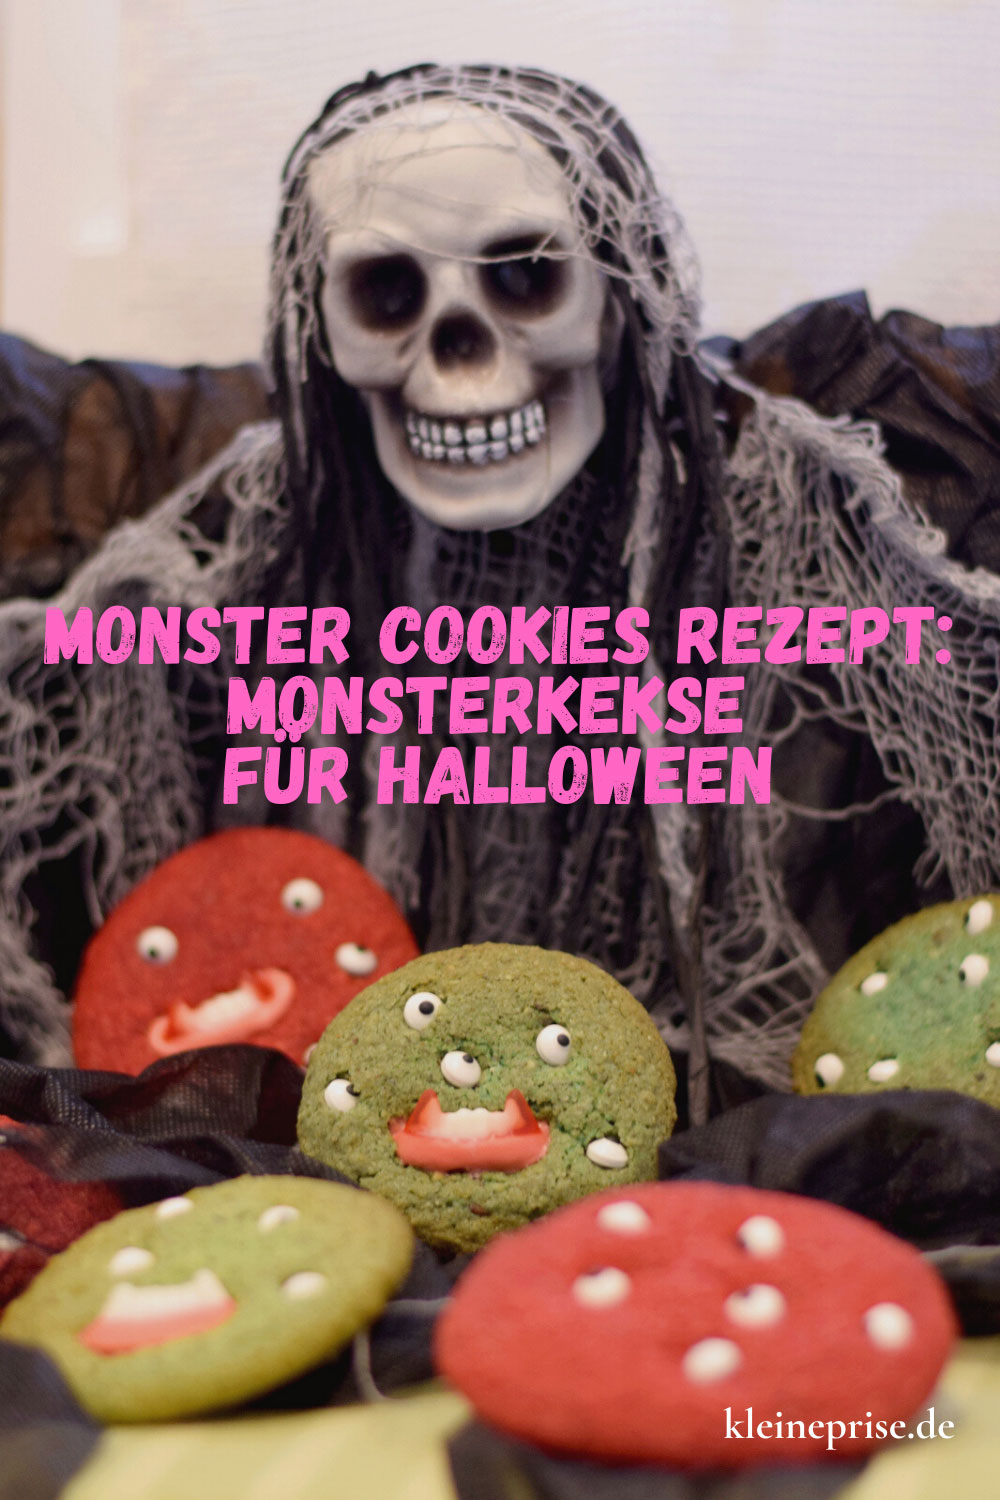 Pin es bei Pinterest: Monster Cookies Rezept